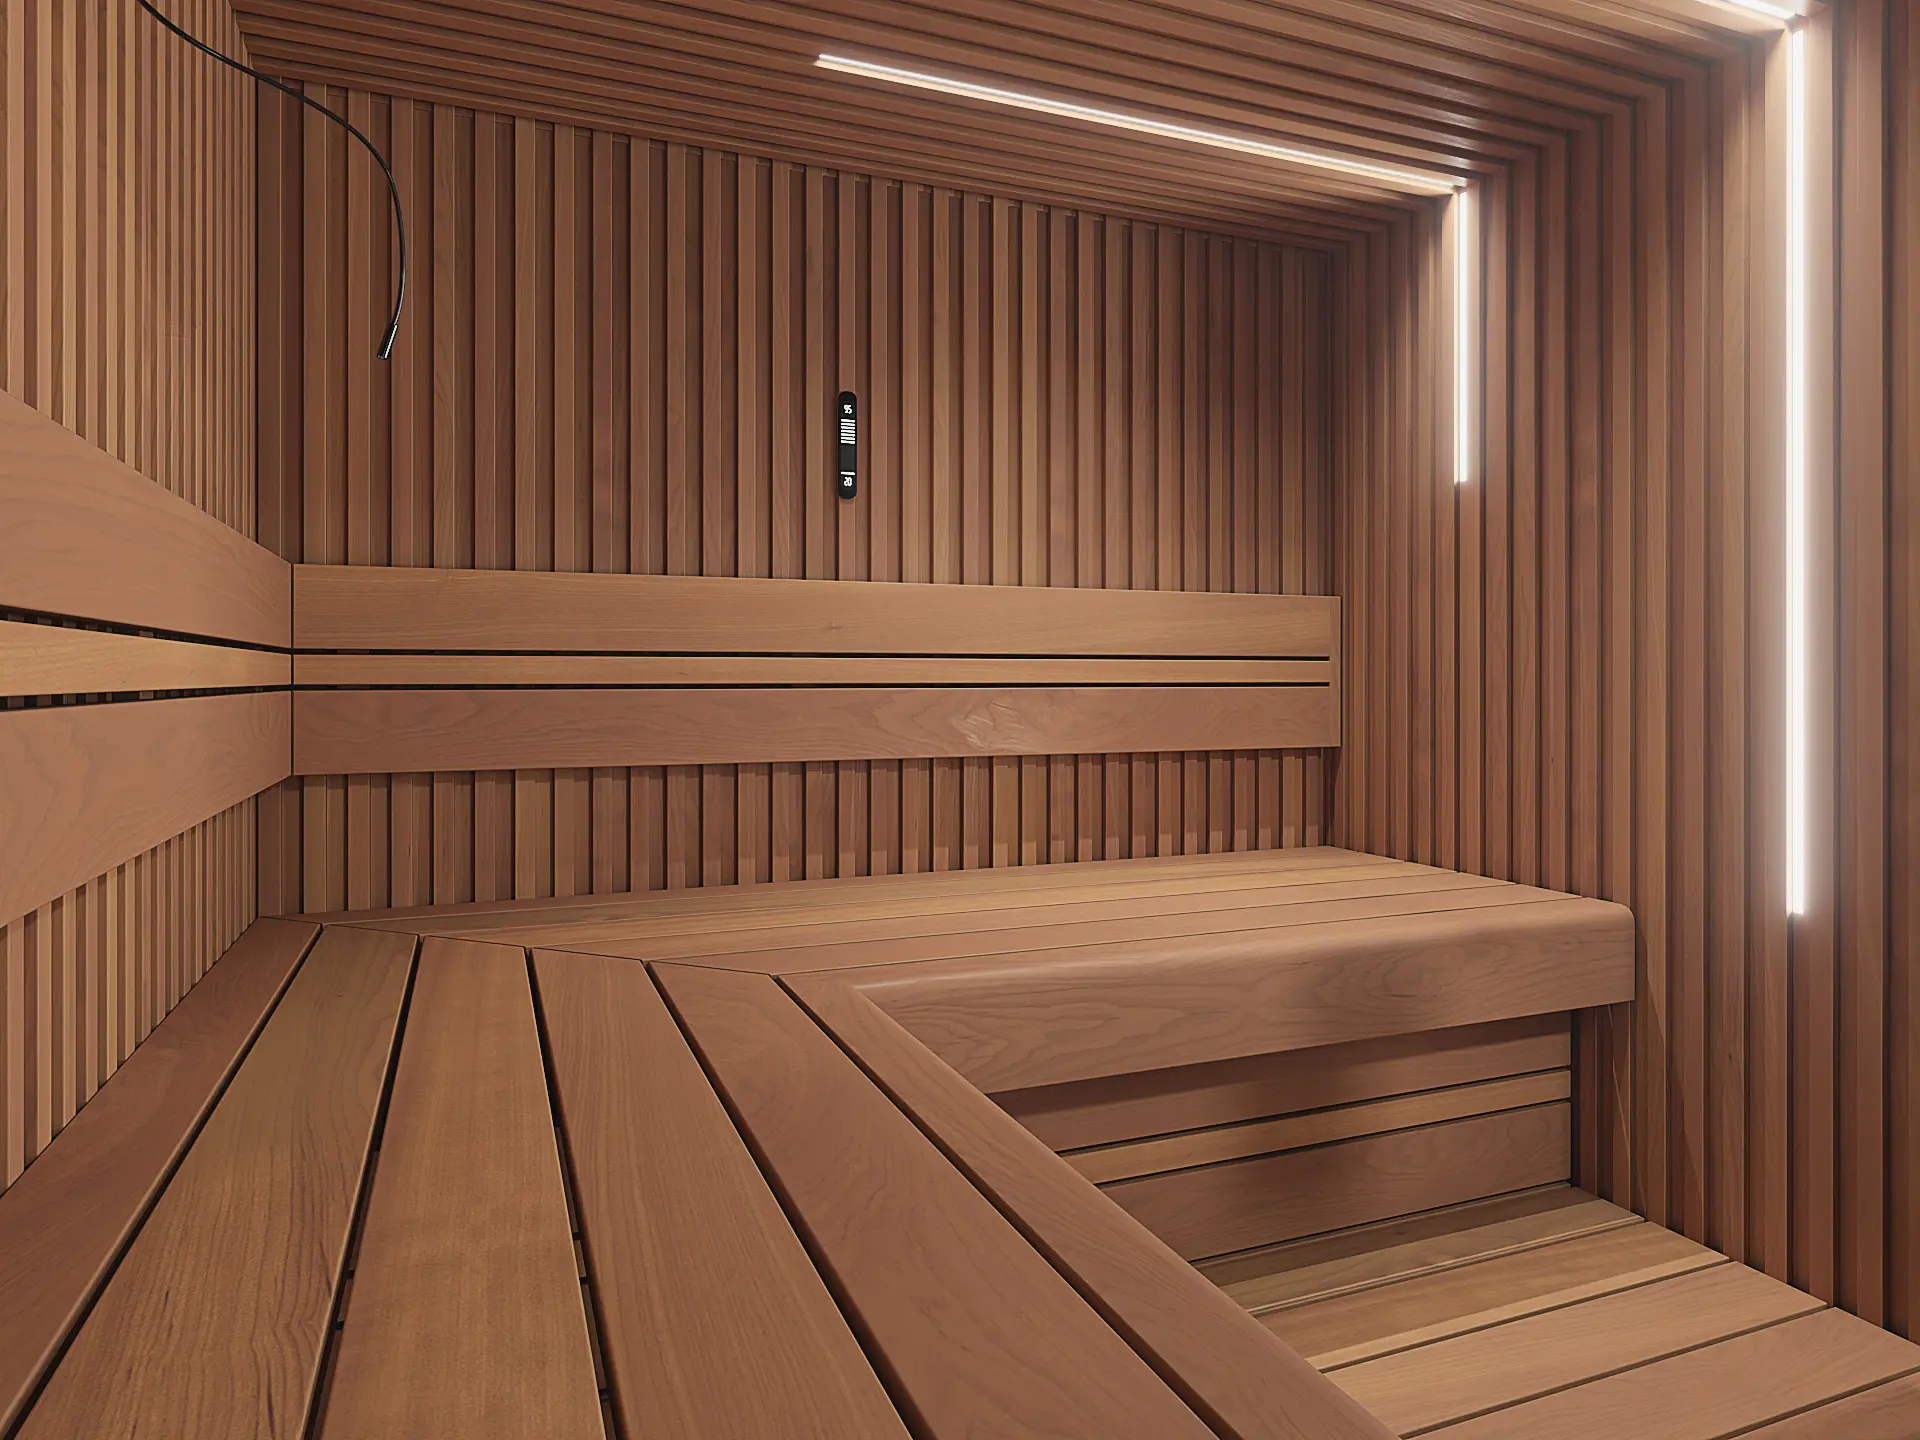 Sauna Raita für Innen, Detailaufnahme der Innenverkleidung und Liegeflächen, Beleuchtungsstreifen über Eck an Wand und Decke, individuelle Ausstattung